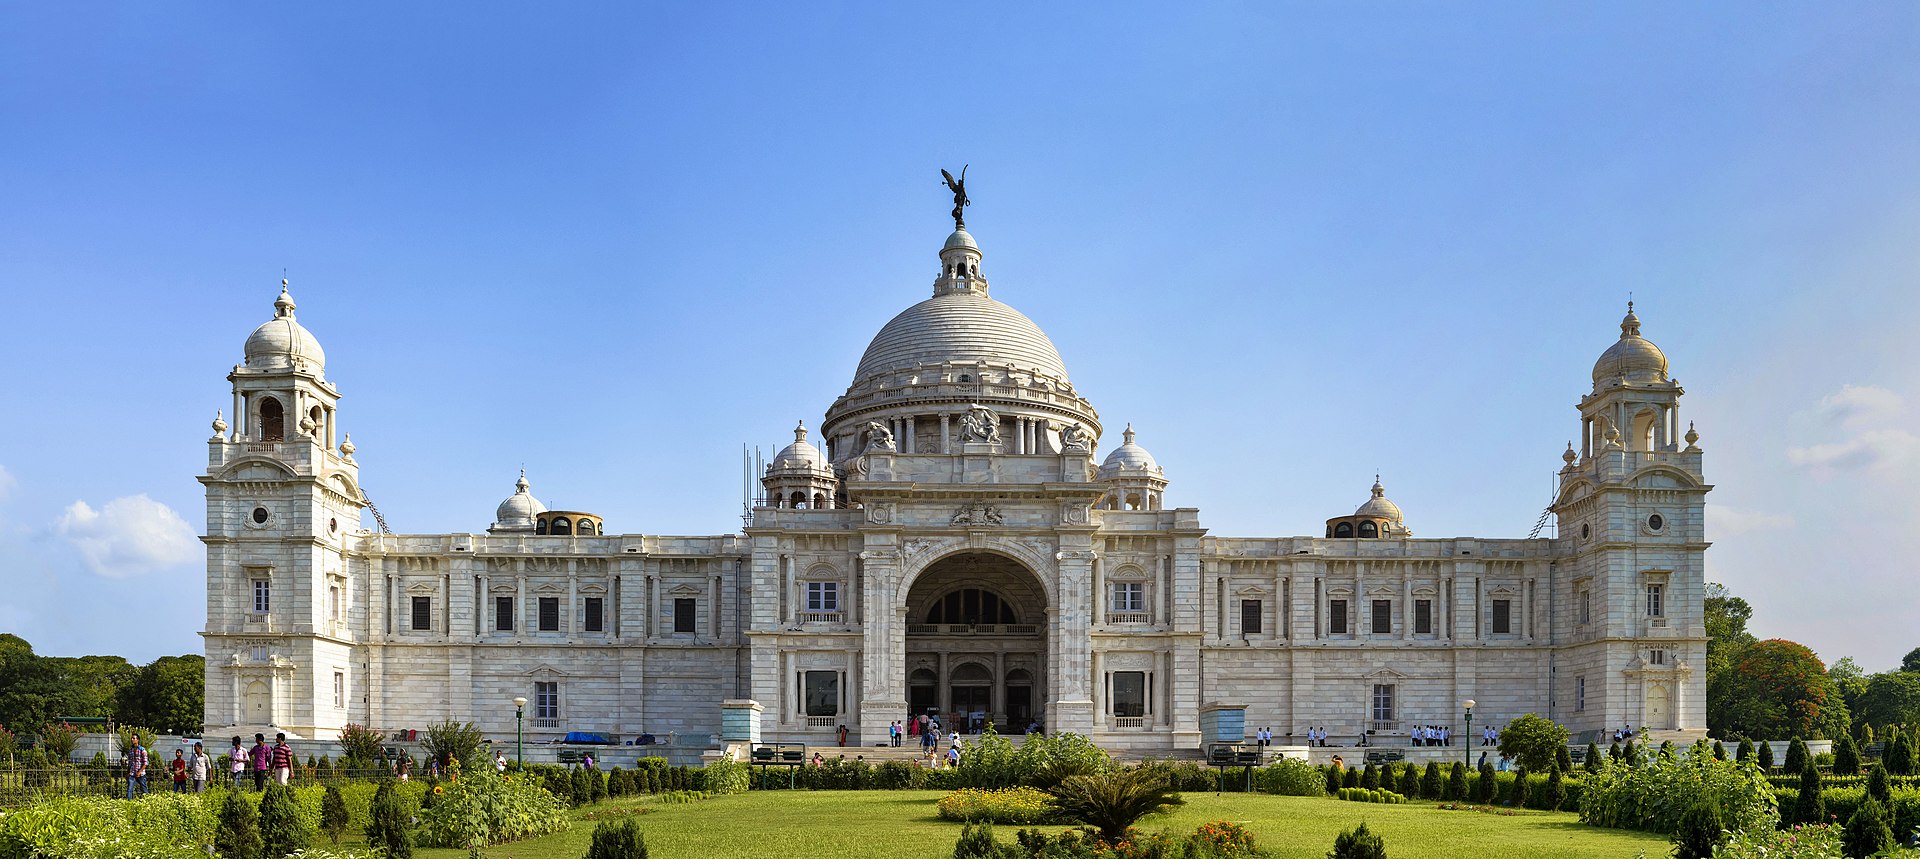 Victoria_Memorial_situated_in_Kolkata